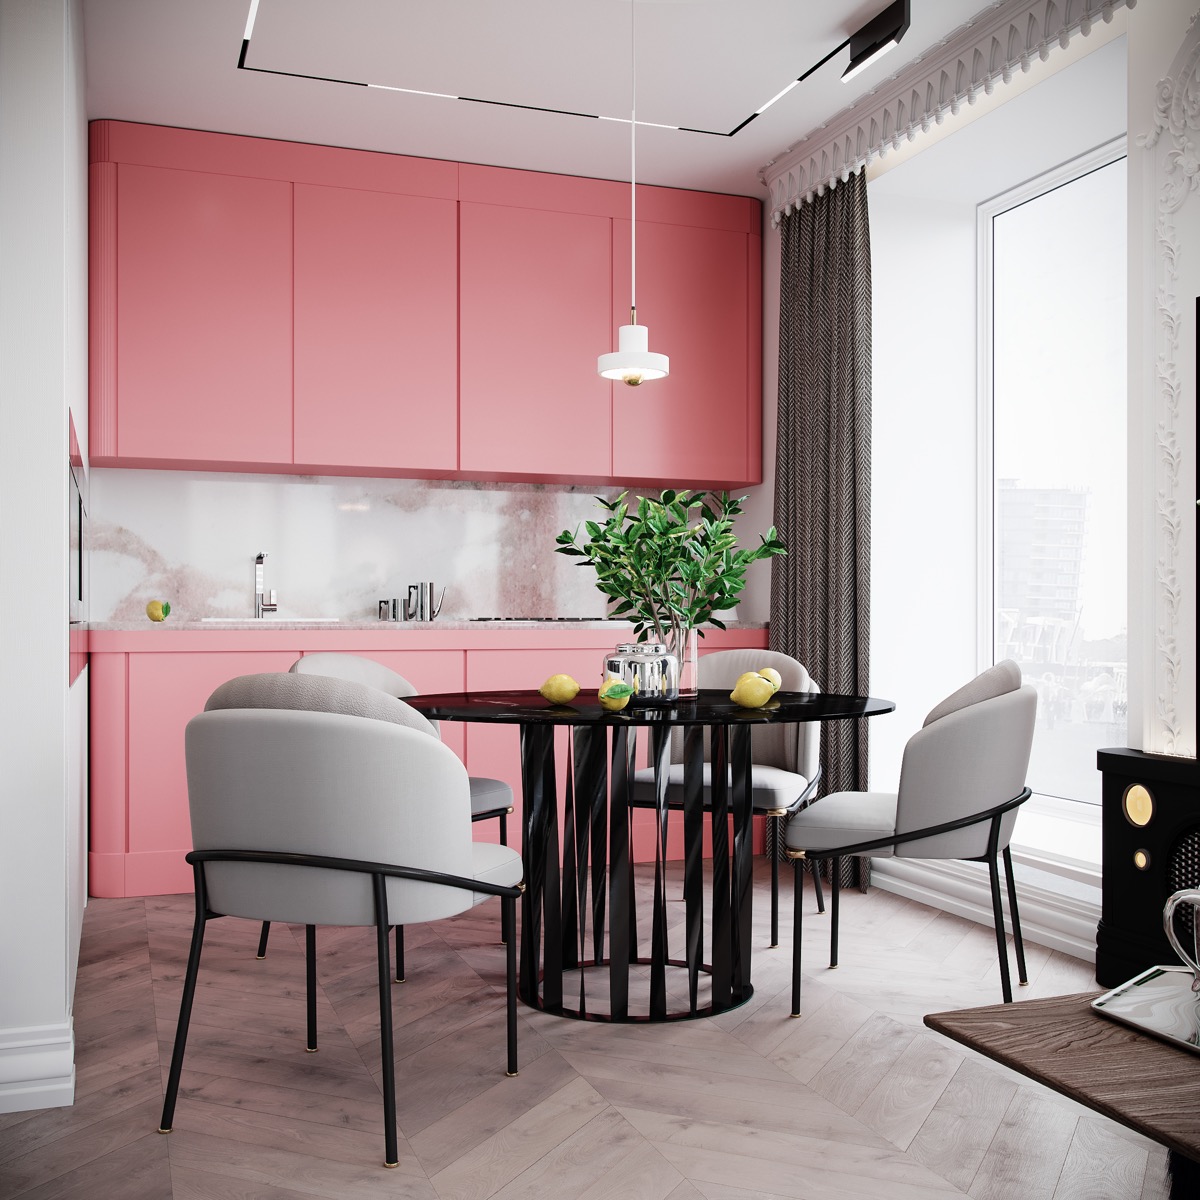 Chiếc tủ bếp với sắc hồng rực rỡ trong gian bếp này có thể khiến nhiều người choáng ngợp. Tuy nhiên màu sắc tổng thể đã được cân bằng nhờ sàn nhà gỗ, chiếc bàn ăn màu đen và bộ ghế màu ghi xám.